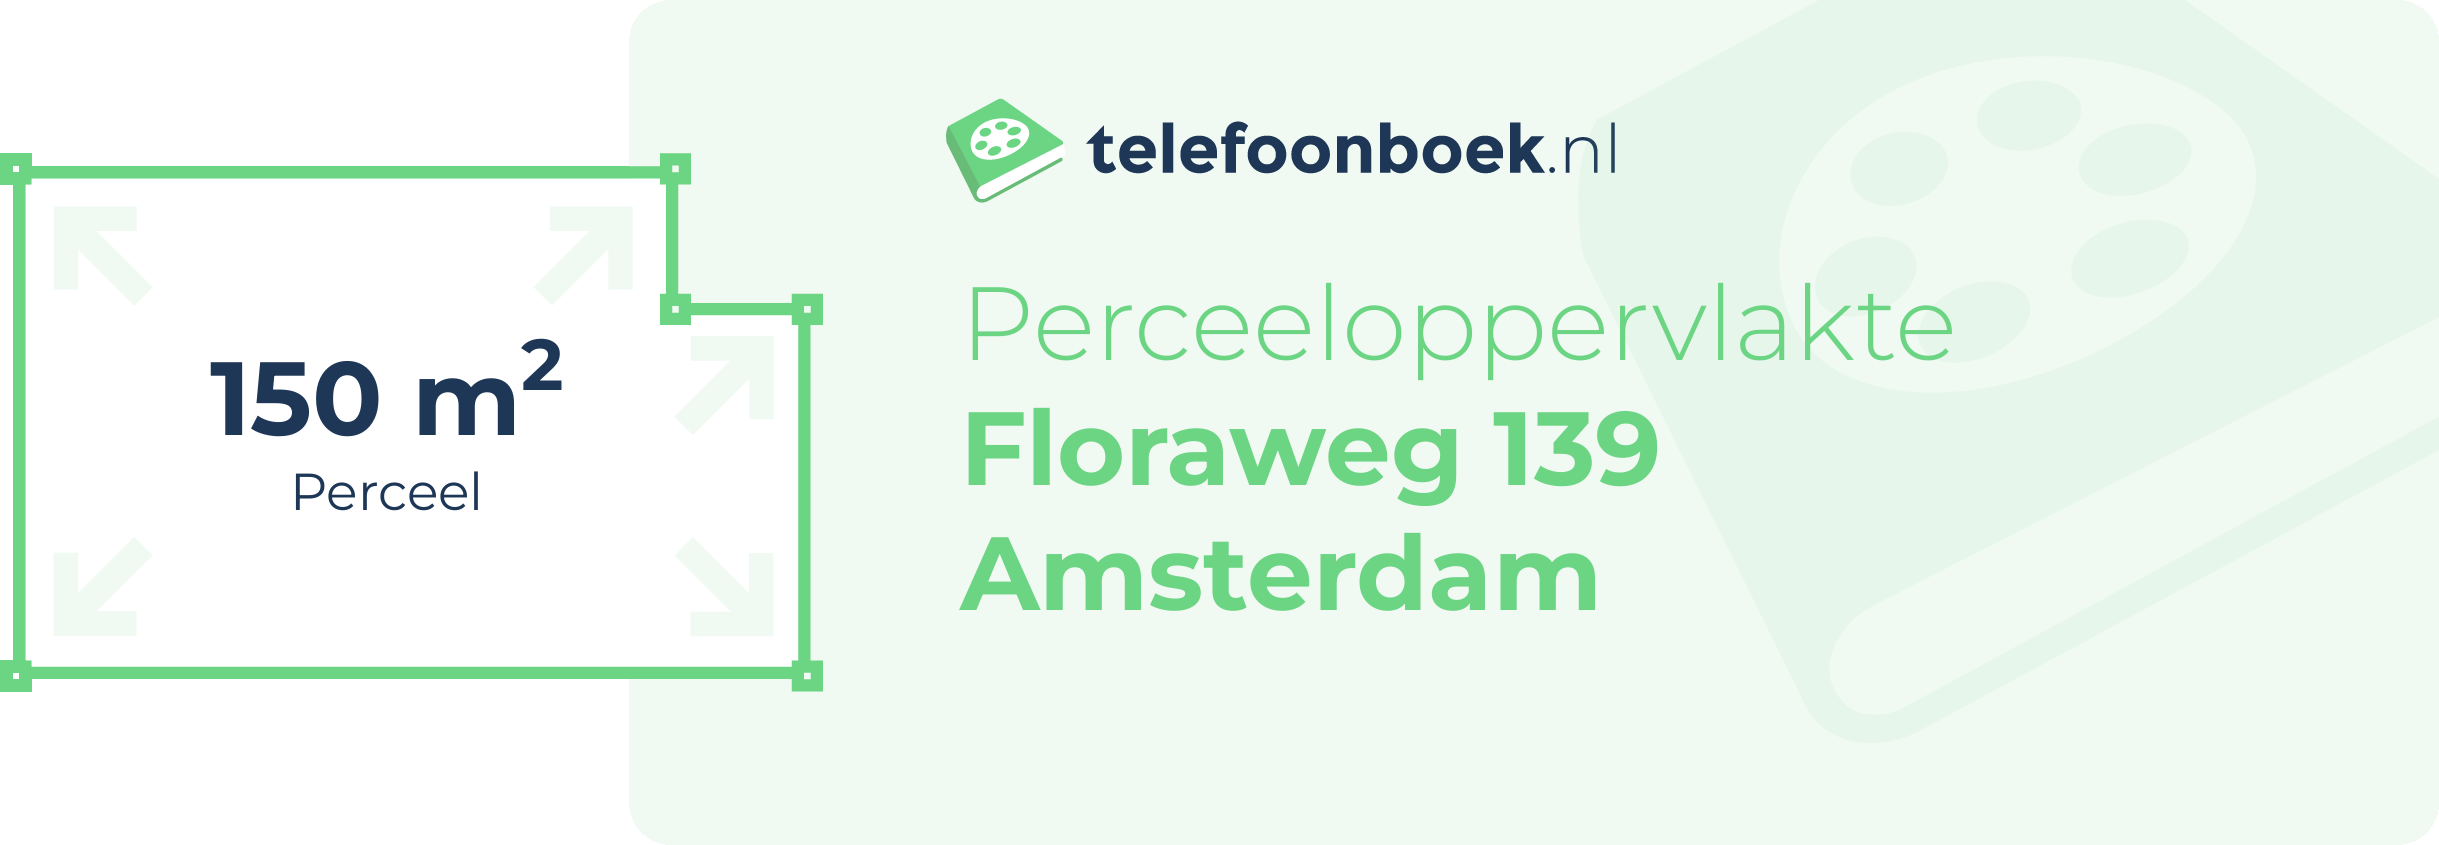 Perceeloppervlakte Floraweg 139 Amsterdam